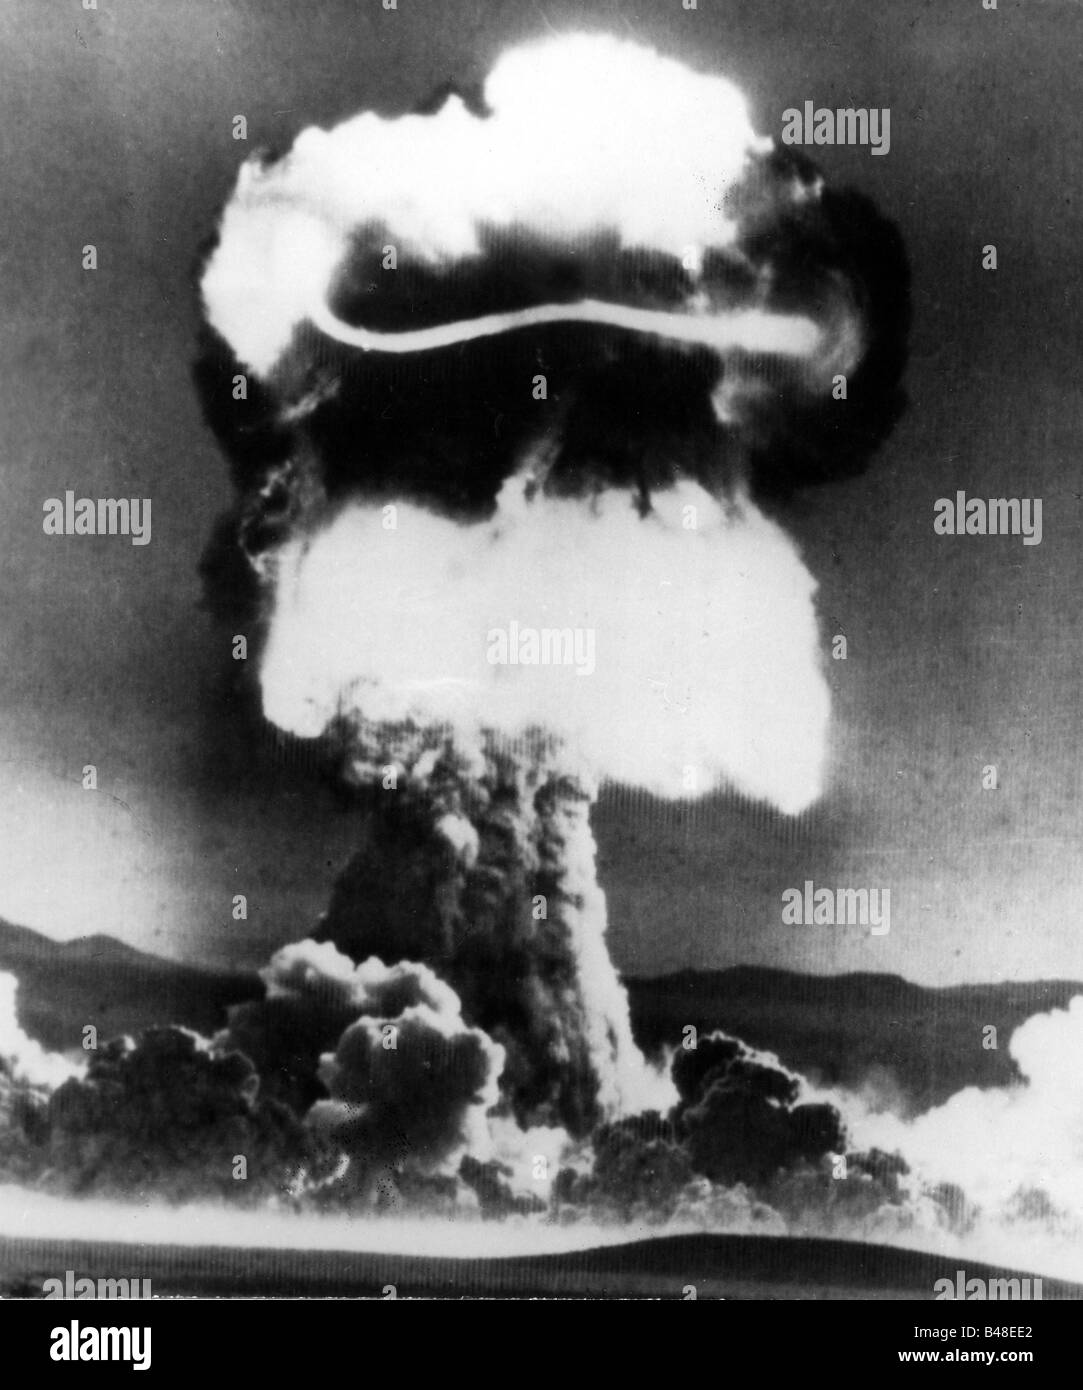 Militare, USA, arma nucleare, test 'Priscilla' di una bomba Mk-15/39, Area 5, Nevada Test Site, 24.6.1957, Foto Stock